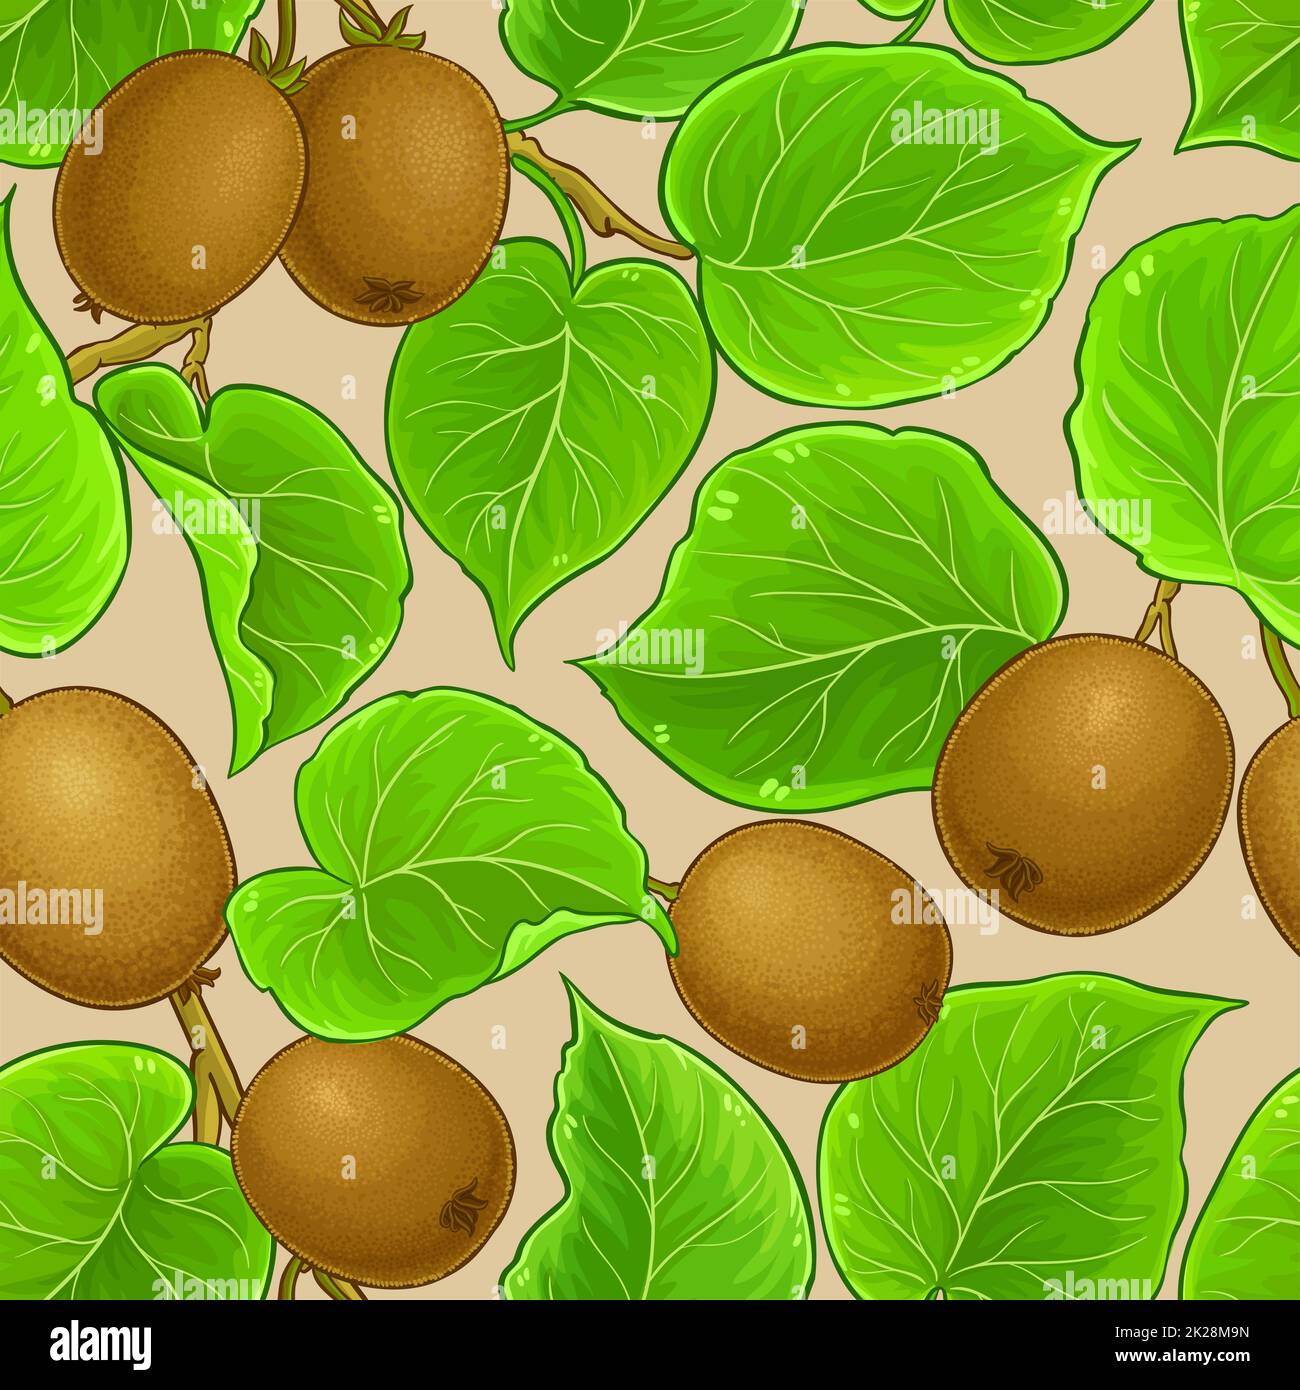 kiwi vector pattern Stock Photo